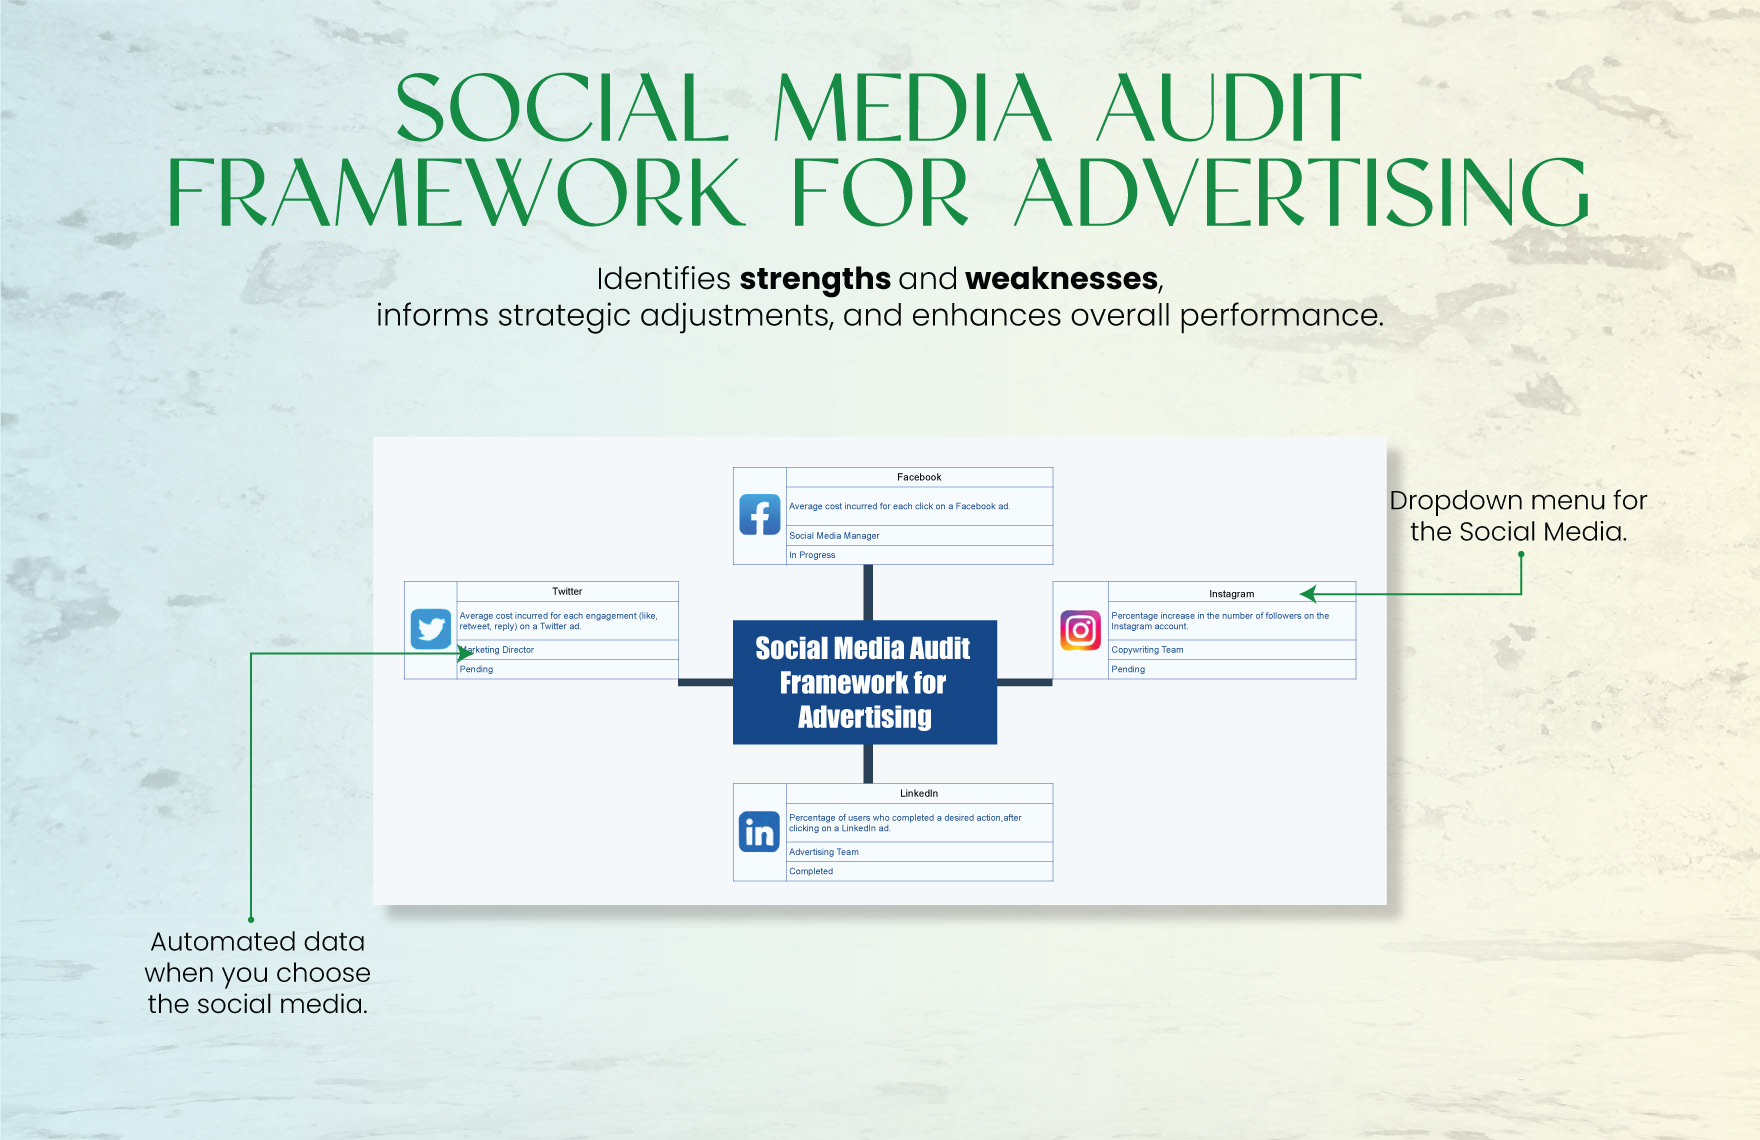 Social Media Audit Framework for Advertising Template